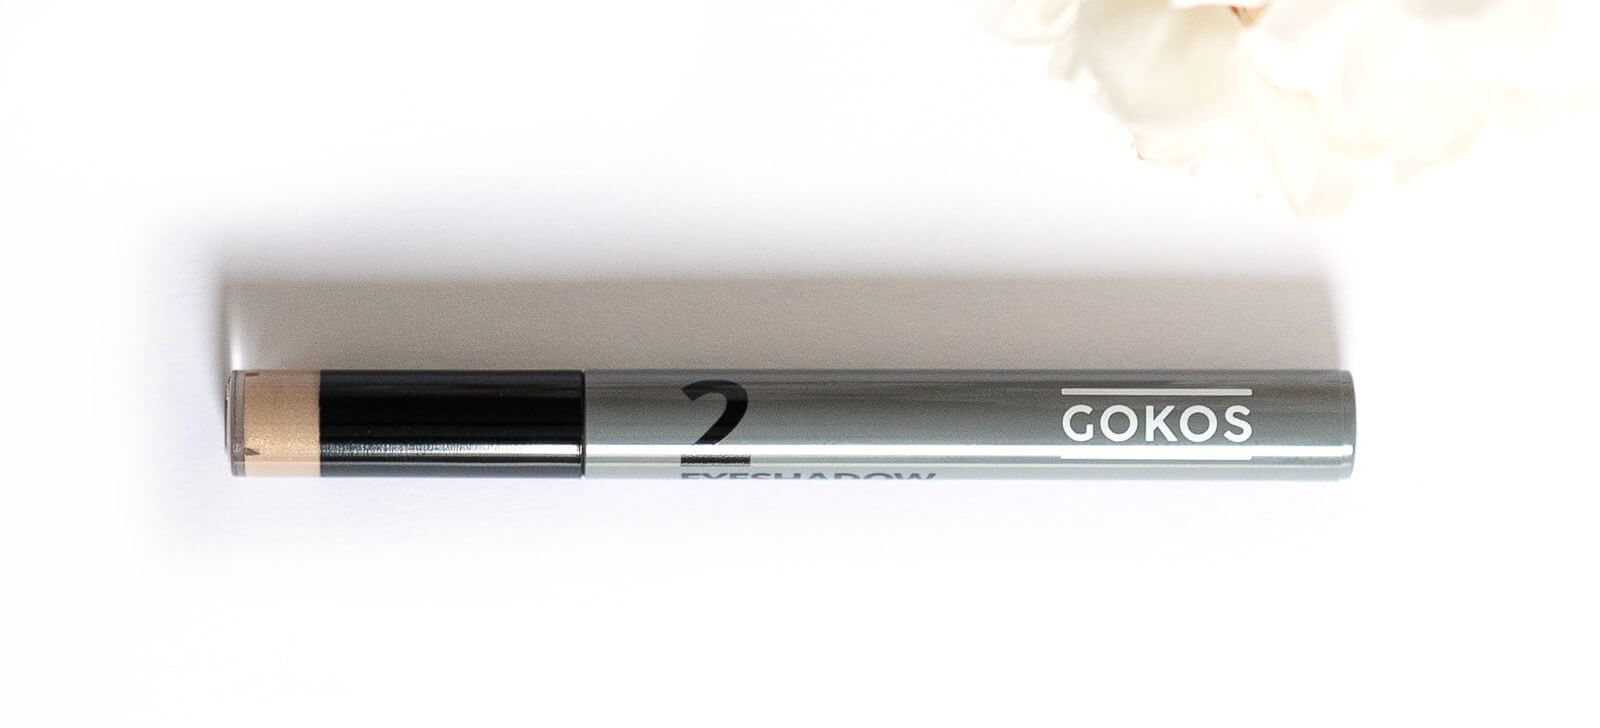 GOKOS - Beauty to go - Indie-Makeup-Brand mit Stiften 117